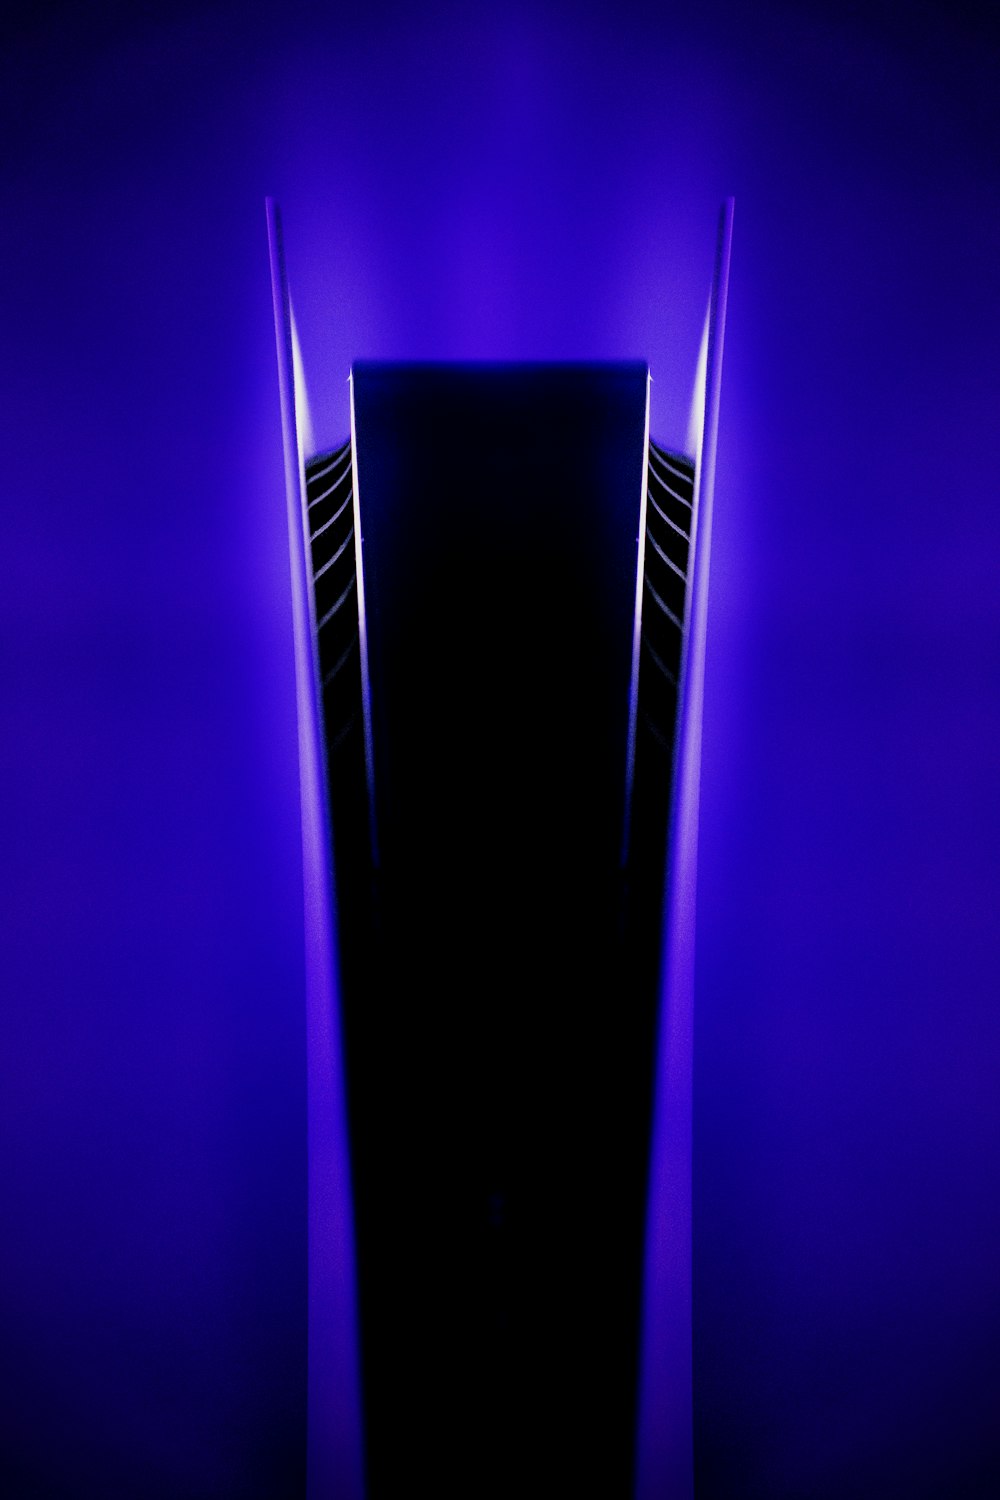 purple and black light fixture